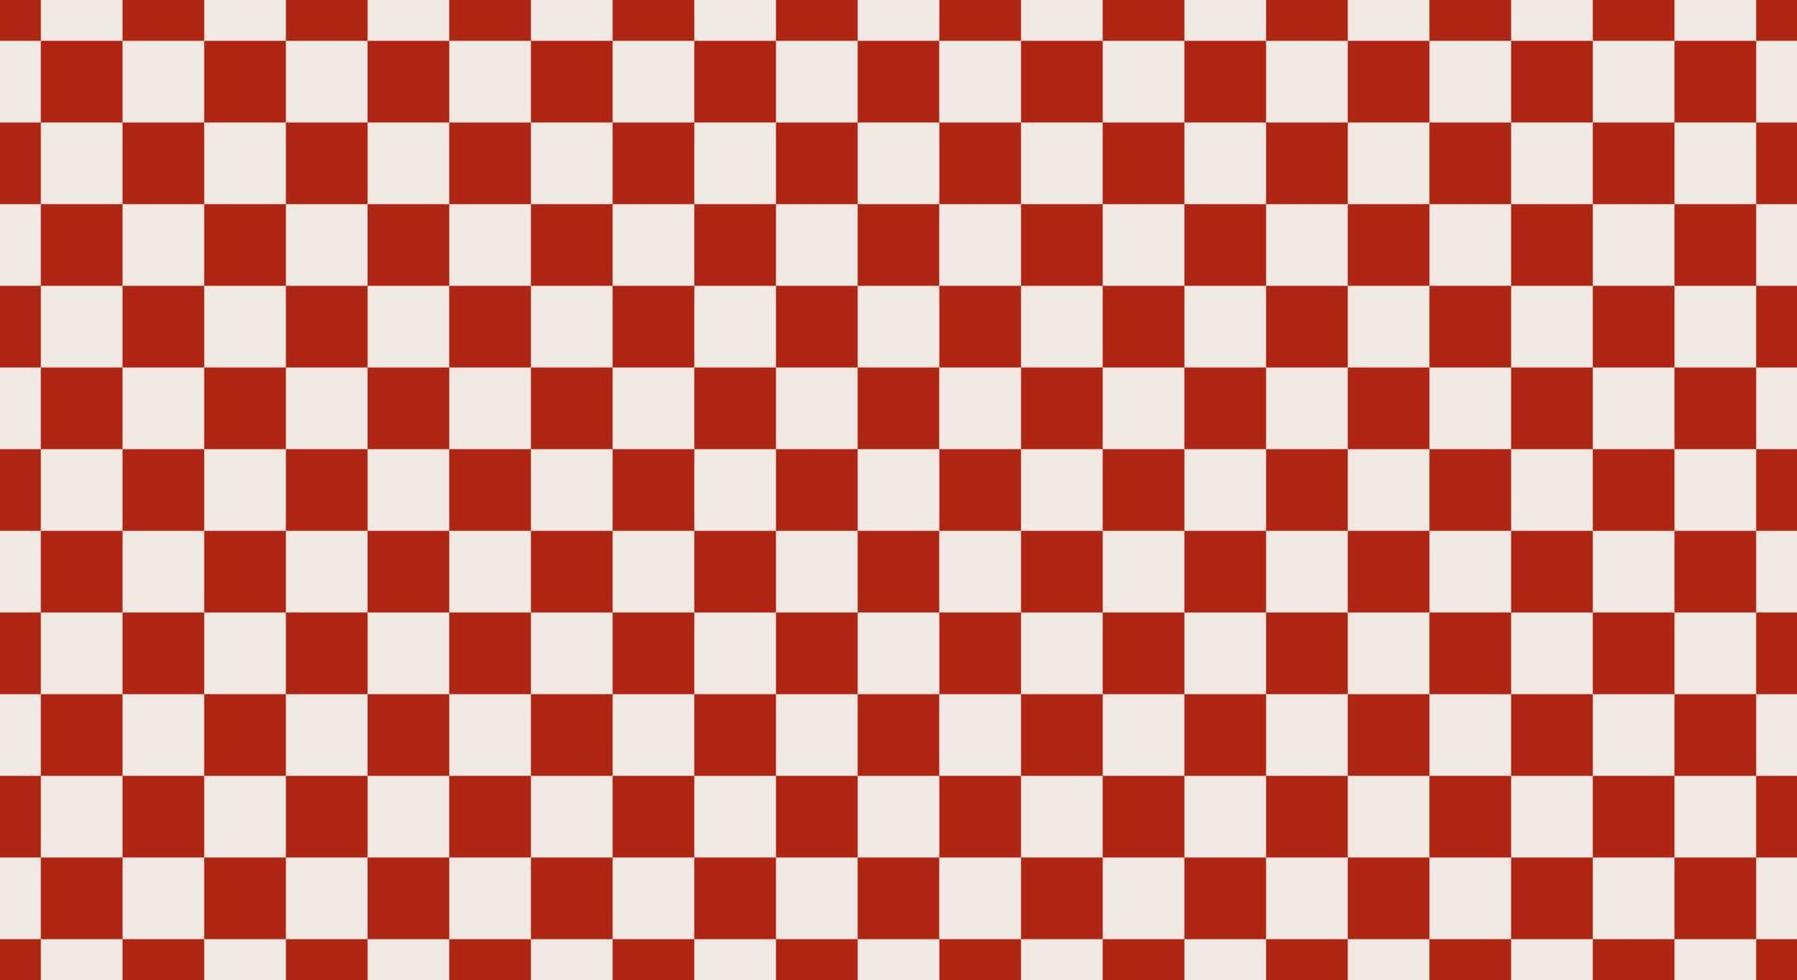 motif carré harmonieux répétitif comme un échiquier, couleurs contrastées. dans la culture japonaise, on l'appelle le motif ichimatsu. fond de rectangle géométrique. fond d'écran vectoriel simple, rouge et blanc.